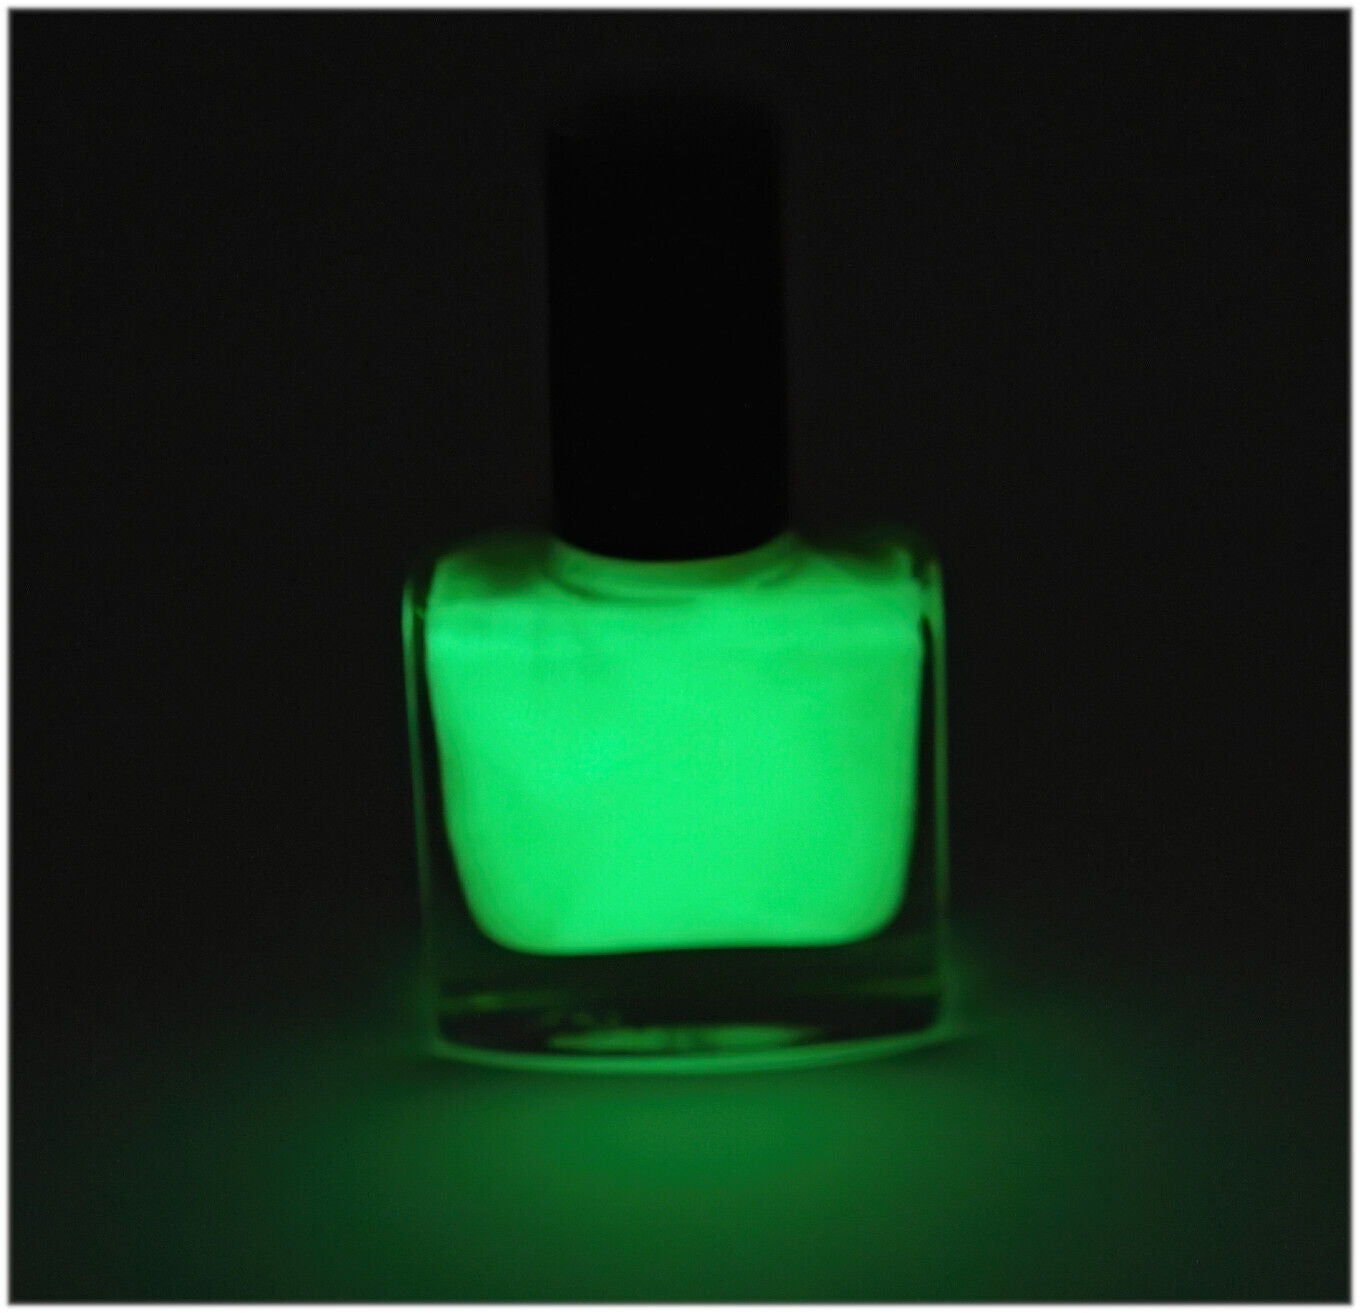 Float enamel. Fluorescent or Glow in the dark